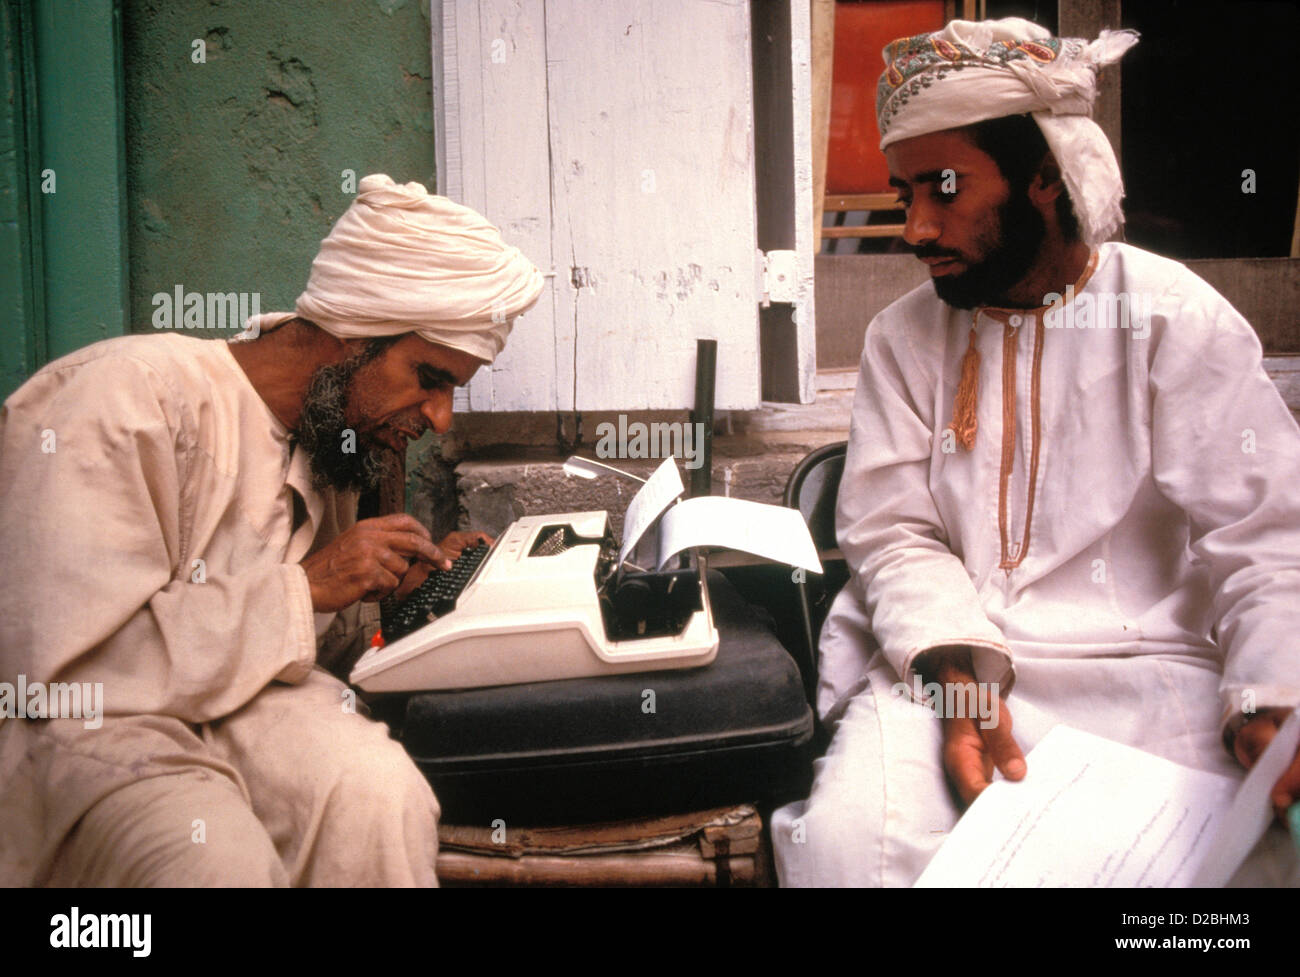 Sultanat von Oman, Maskat Souk. Arabische Schreiber an Schreibmaschine Stockfoto